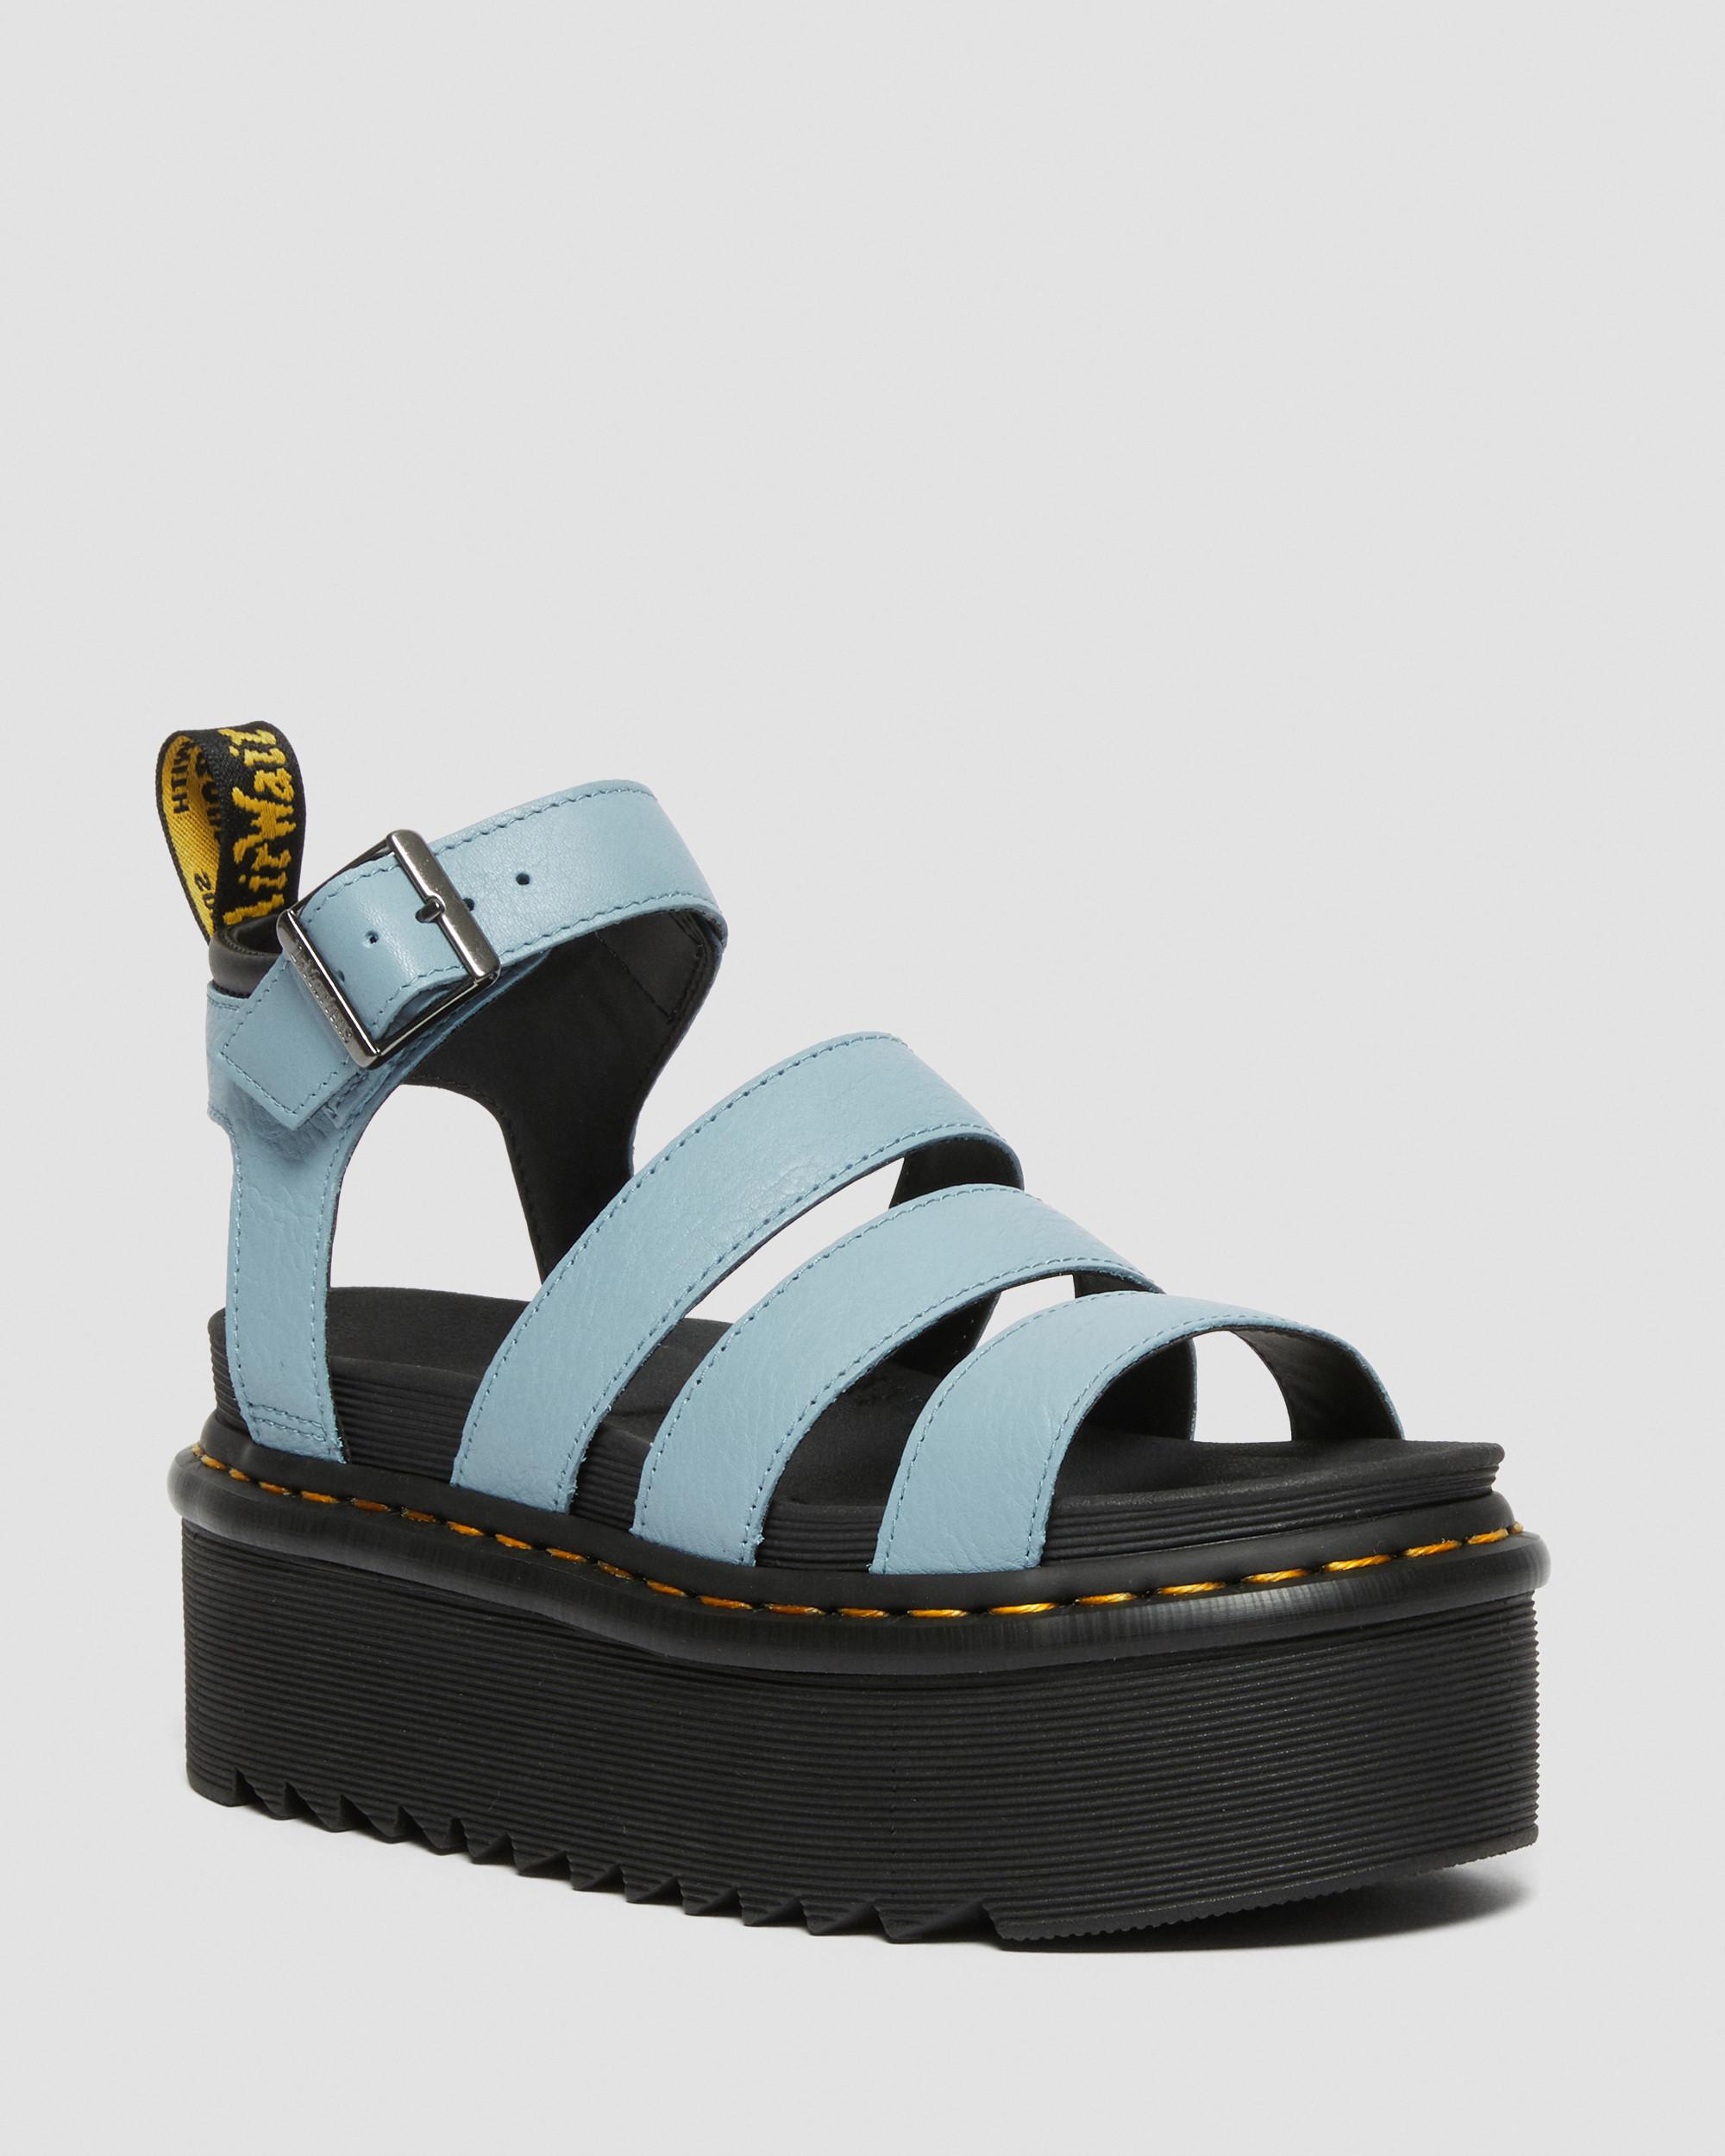 Blaire Quad Pisa Leather Strap Platform Sandals in Zen Blue